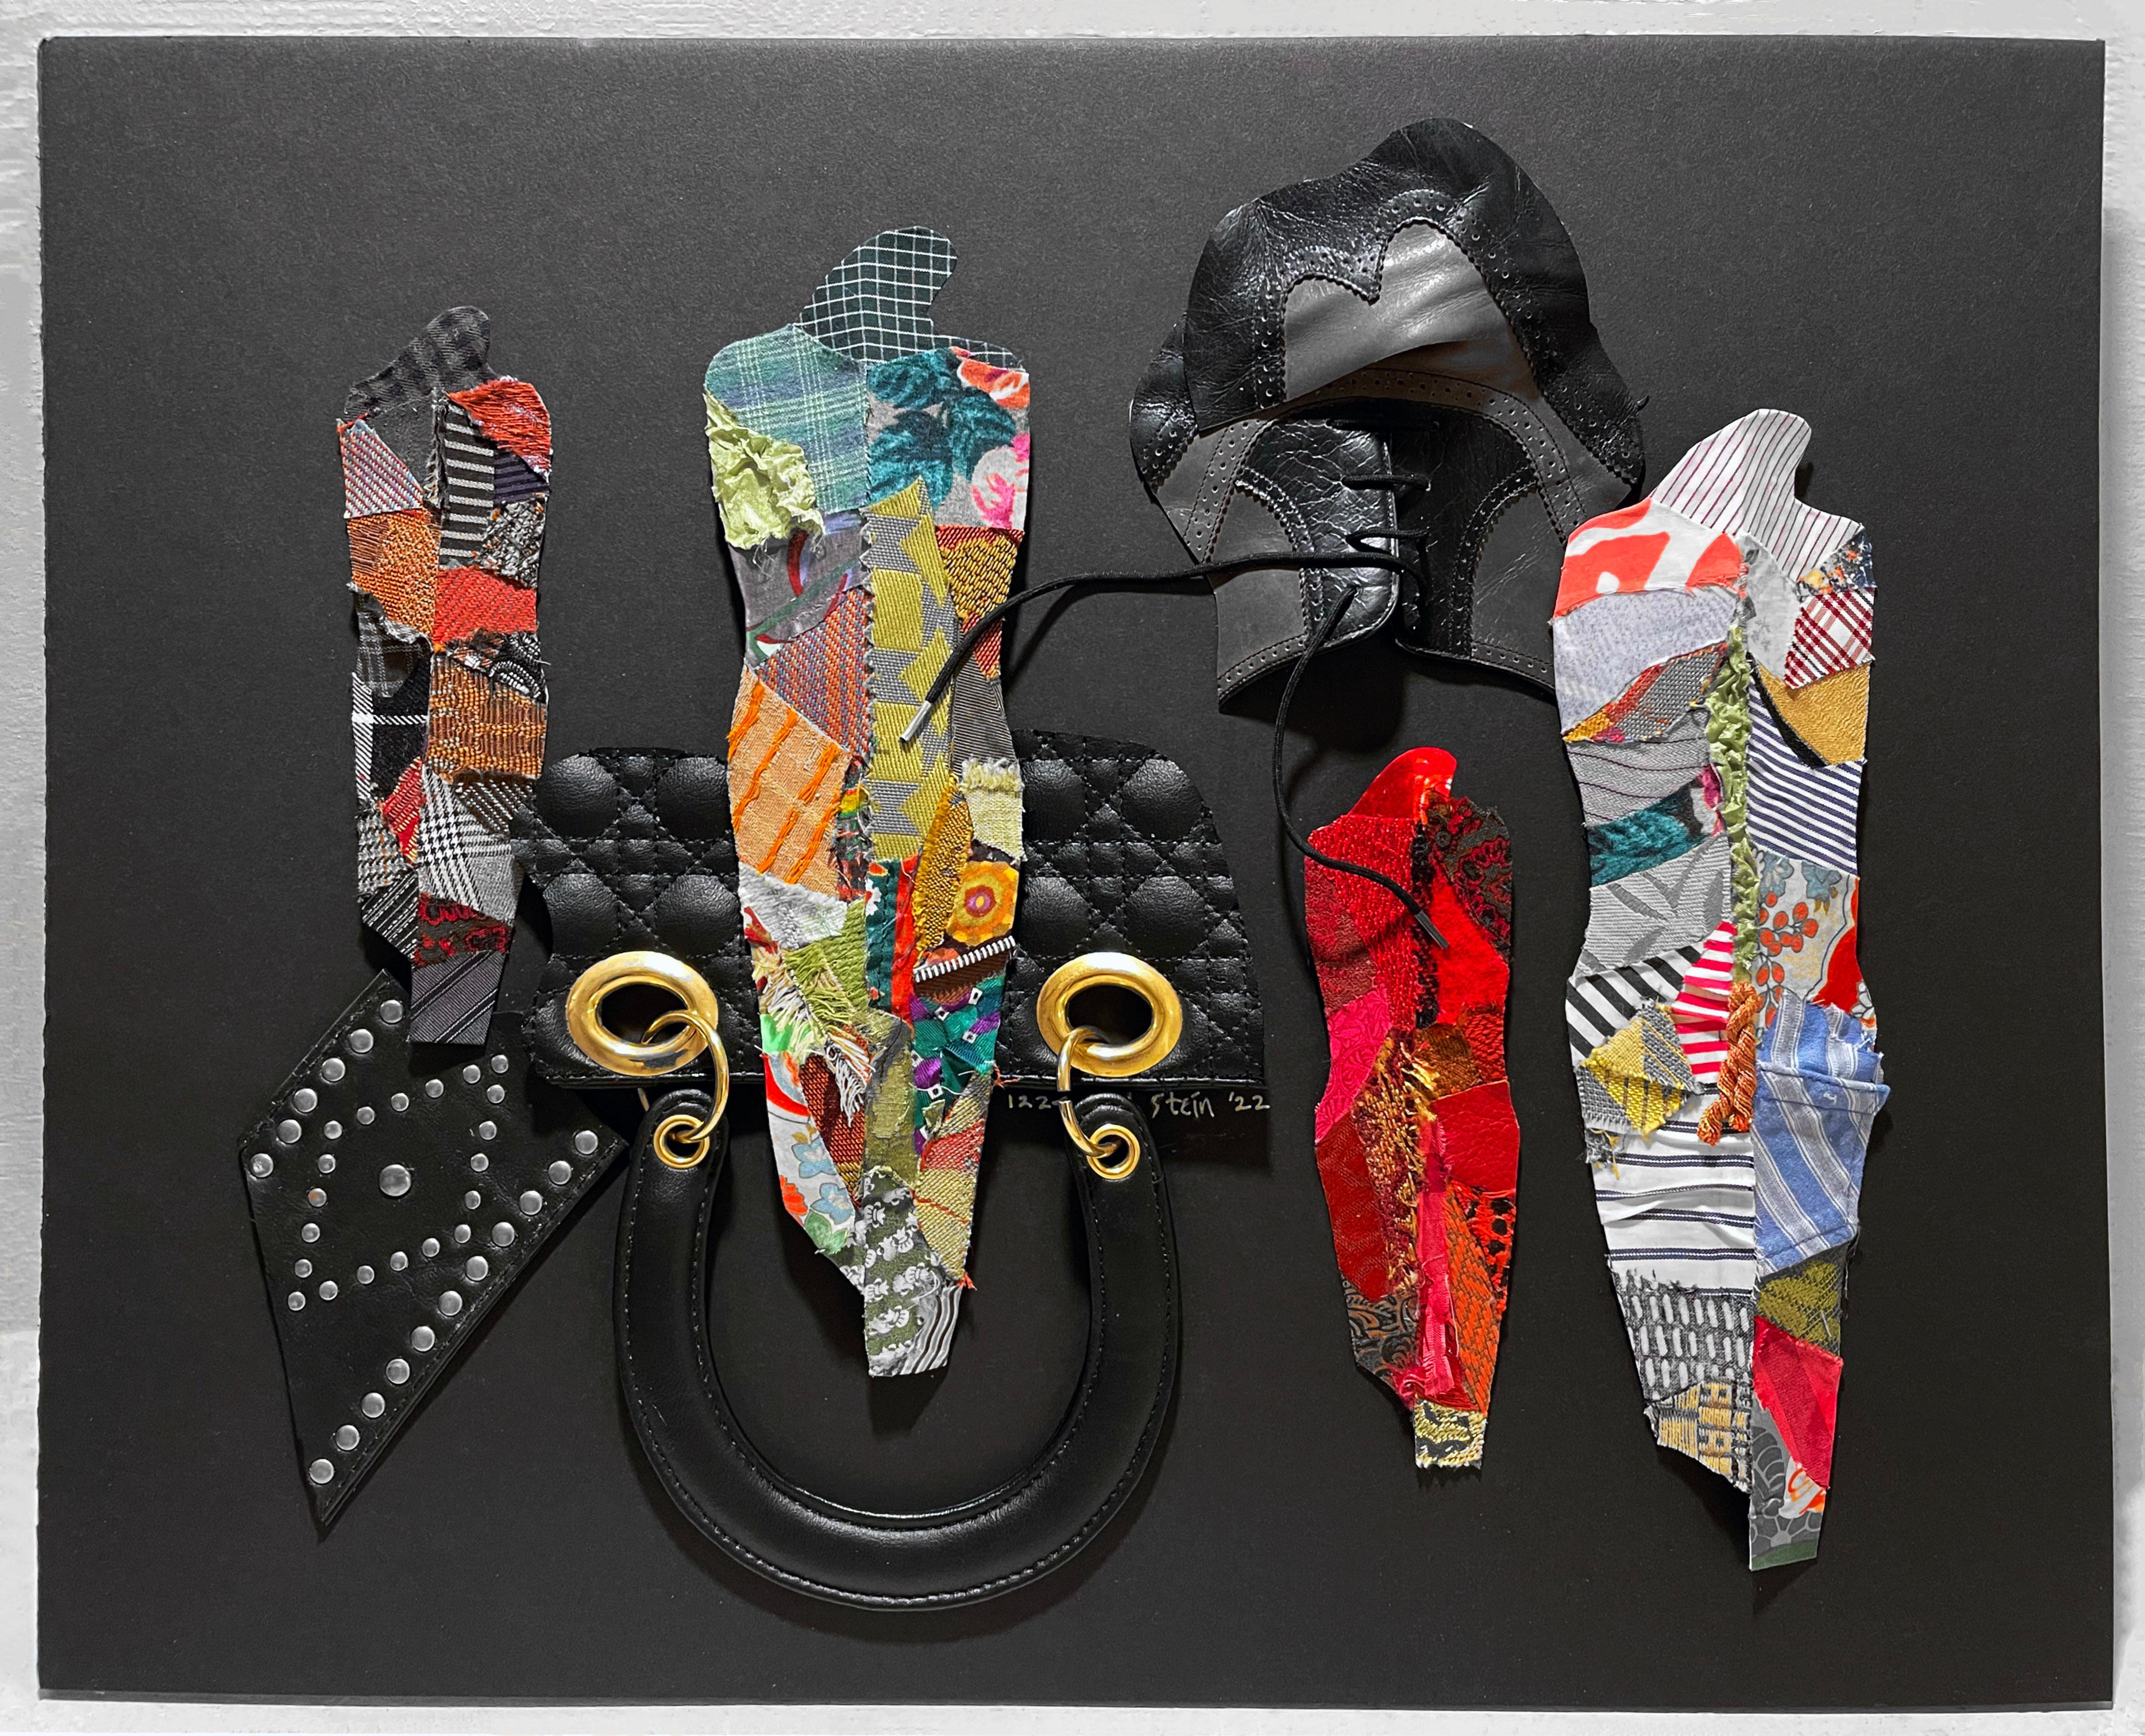 Linda Stein, 1224 - Zeitgenössische Kunst 3D-Skulptur-Stoff-Mischtechnik-Collage

Linda Stein begann ihre Knights of Protection-Serie, nachdem sie nach dem 11. September 2001 gezwungen war, ihr Studio in Downtown New York für ein Jahr zu räumen. 